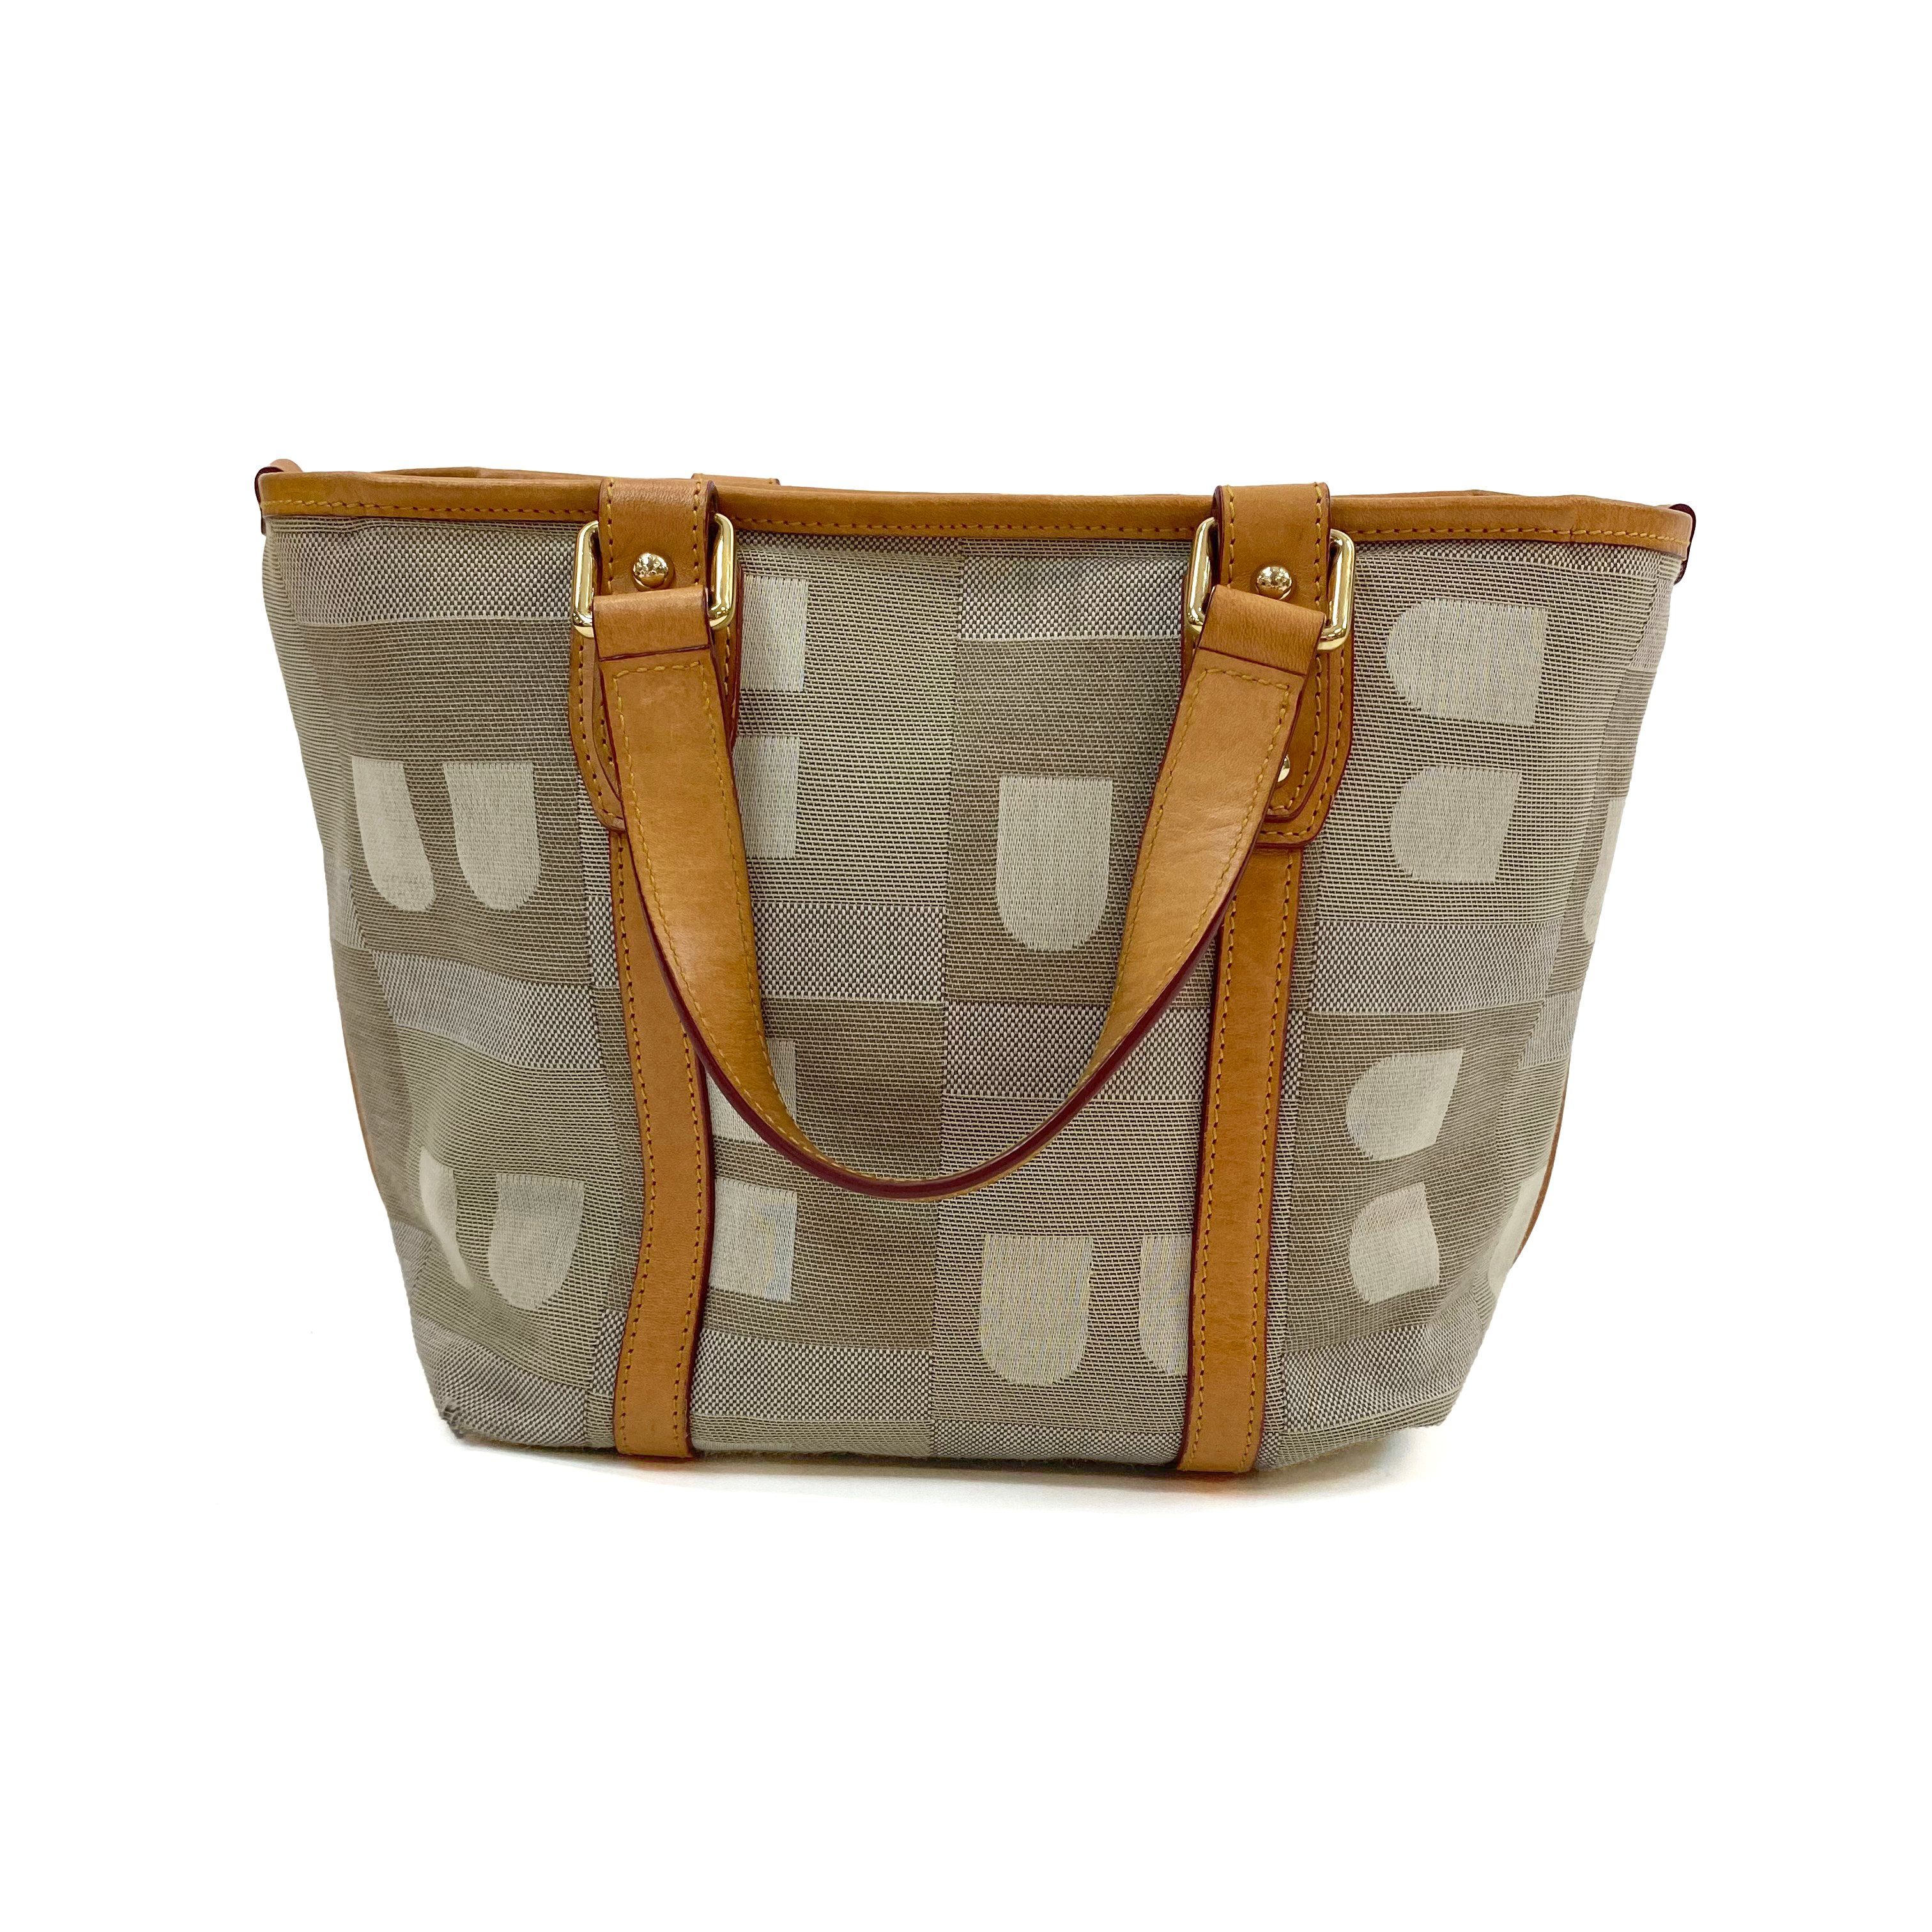 Bally Small Leather/Fabric Handbag